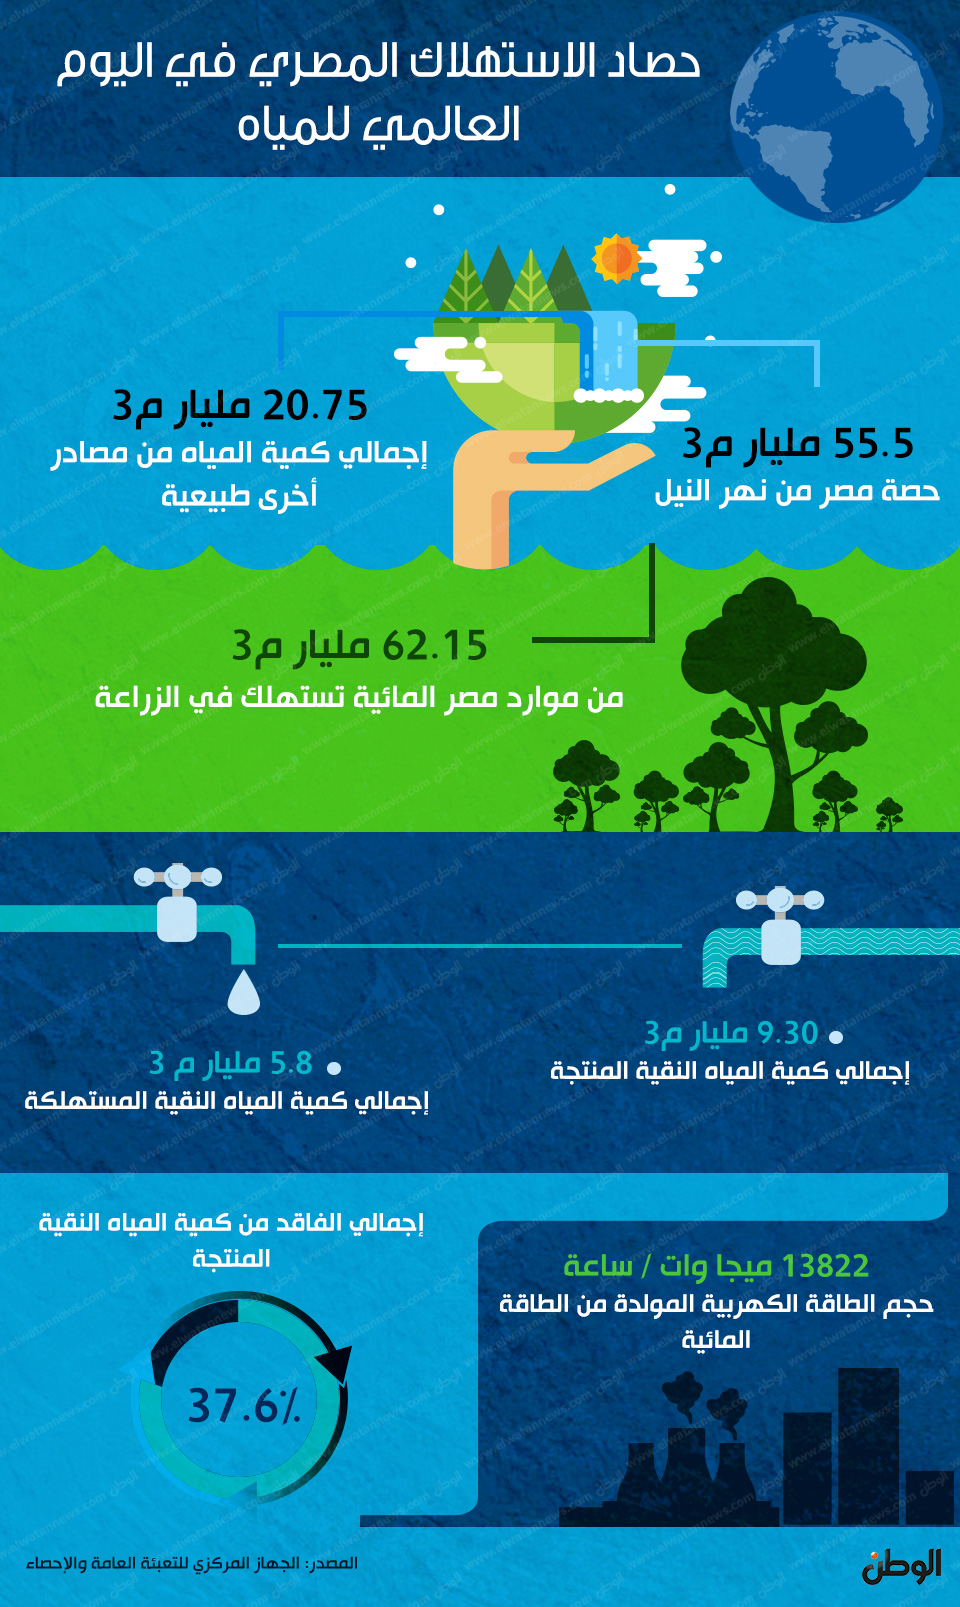 حصاد الاستهلاك المصري في اليوم العالمي للمياه